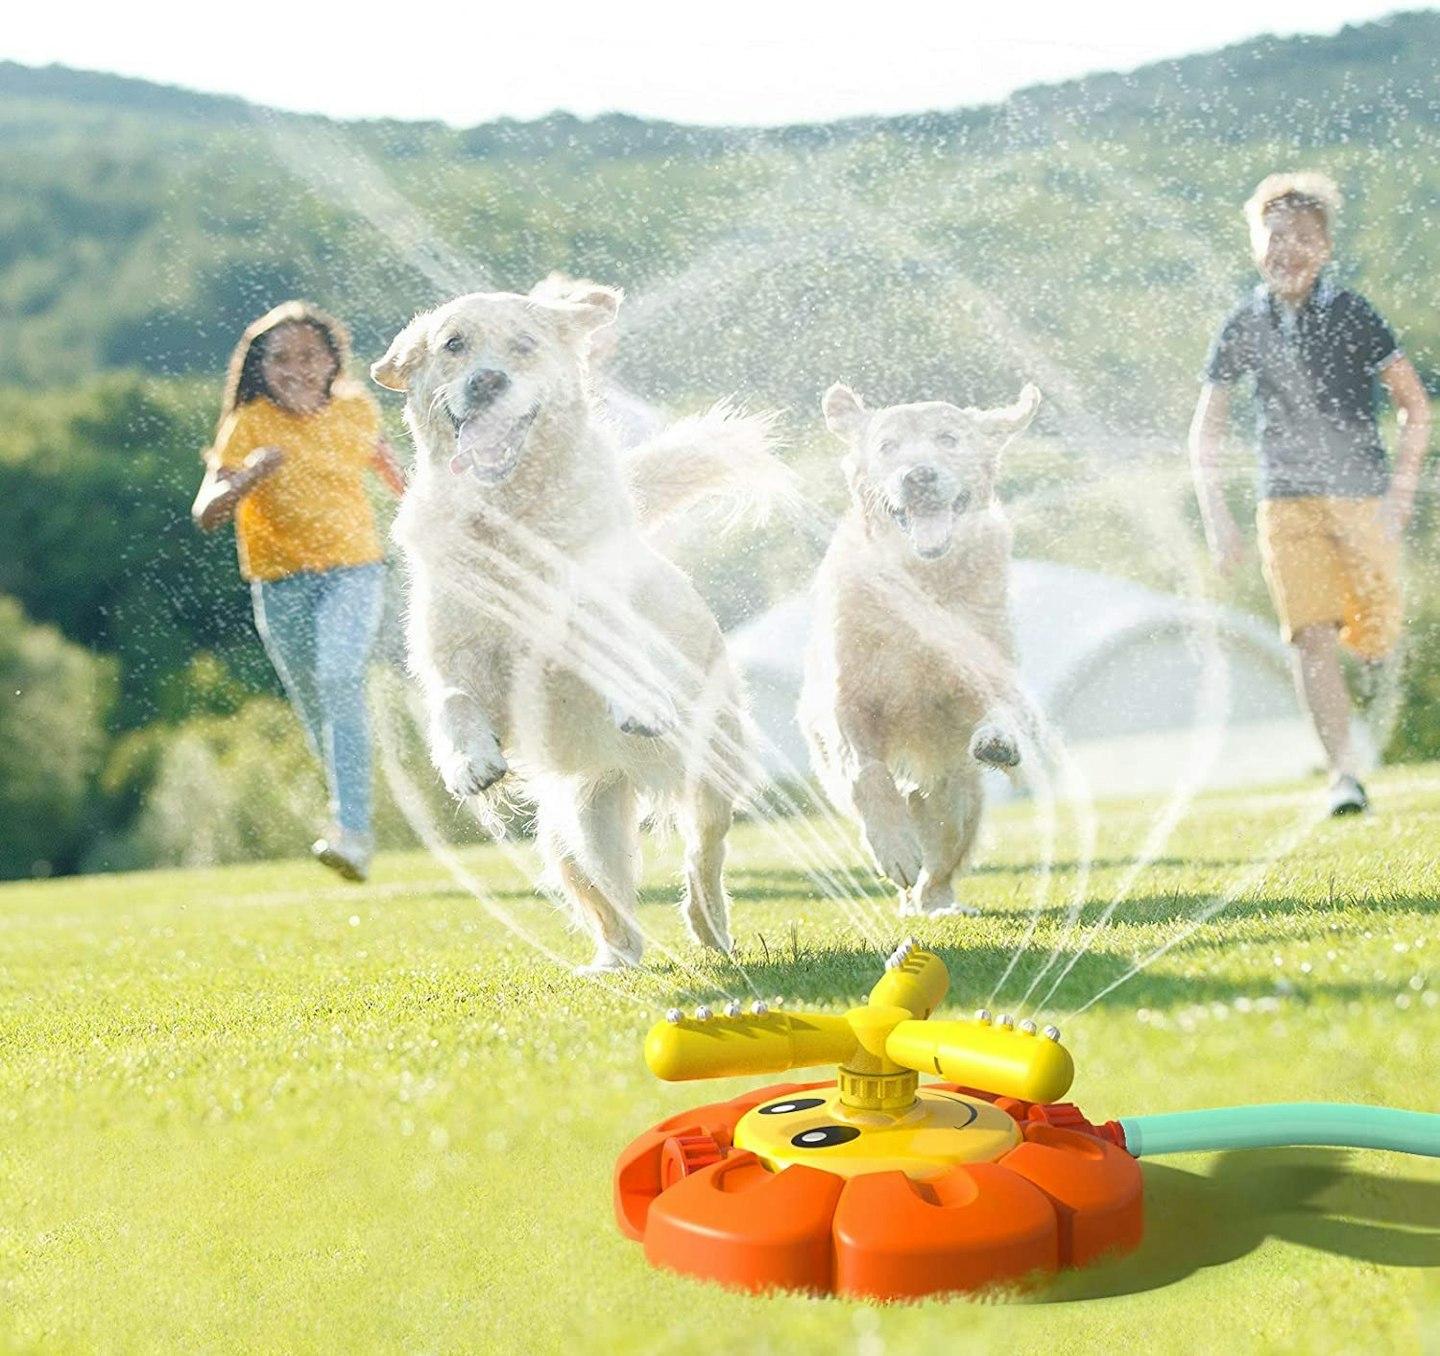 kizplays Sprinkler Toy for Kids